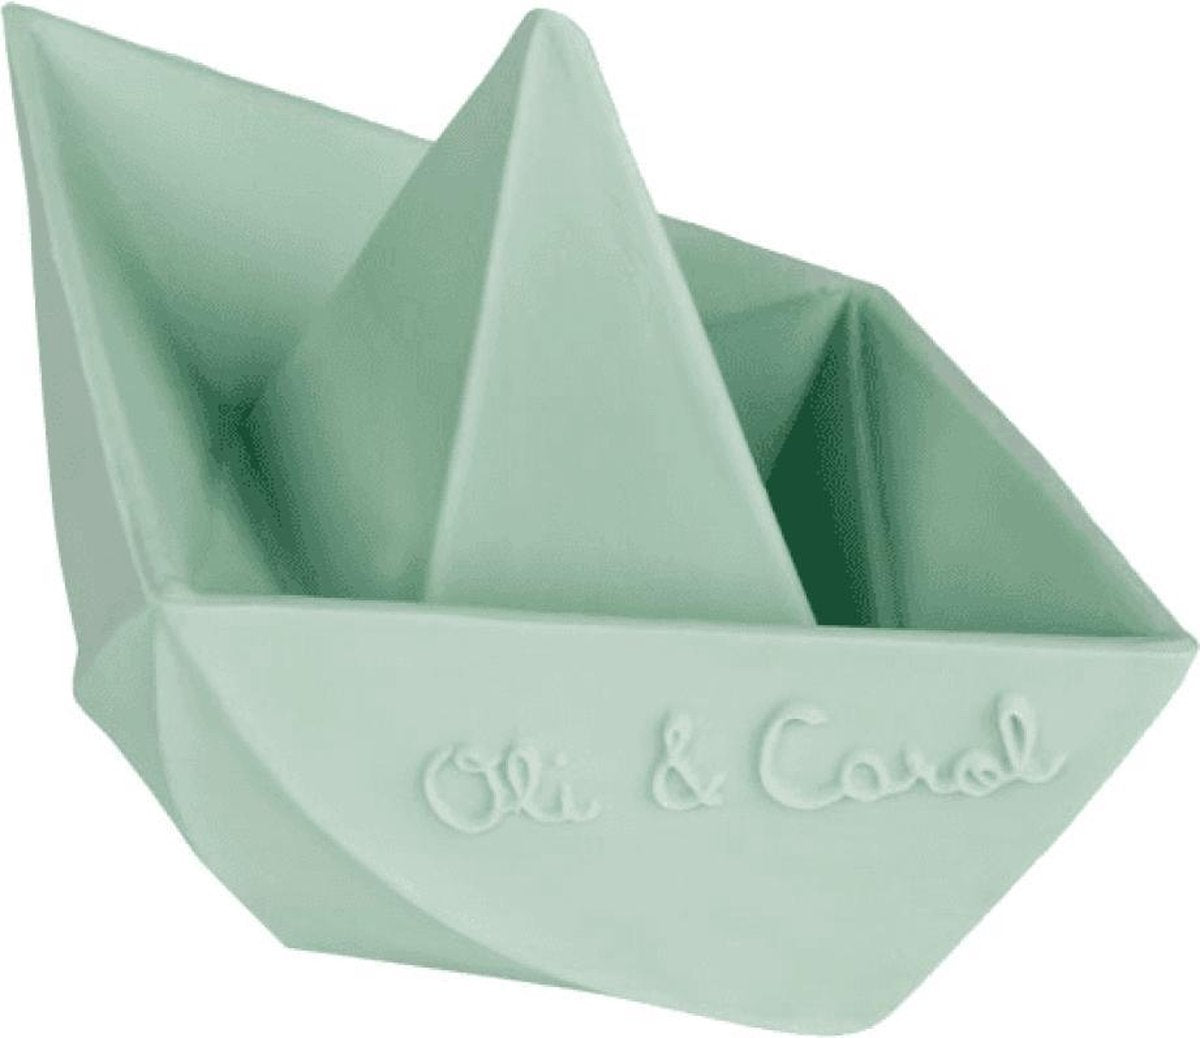 Oli and carol- badspeeltje- bijtspeeltje- natuurlijk- bootje - mint